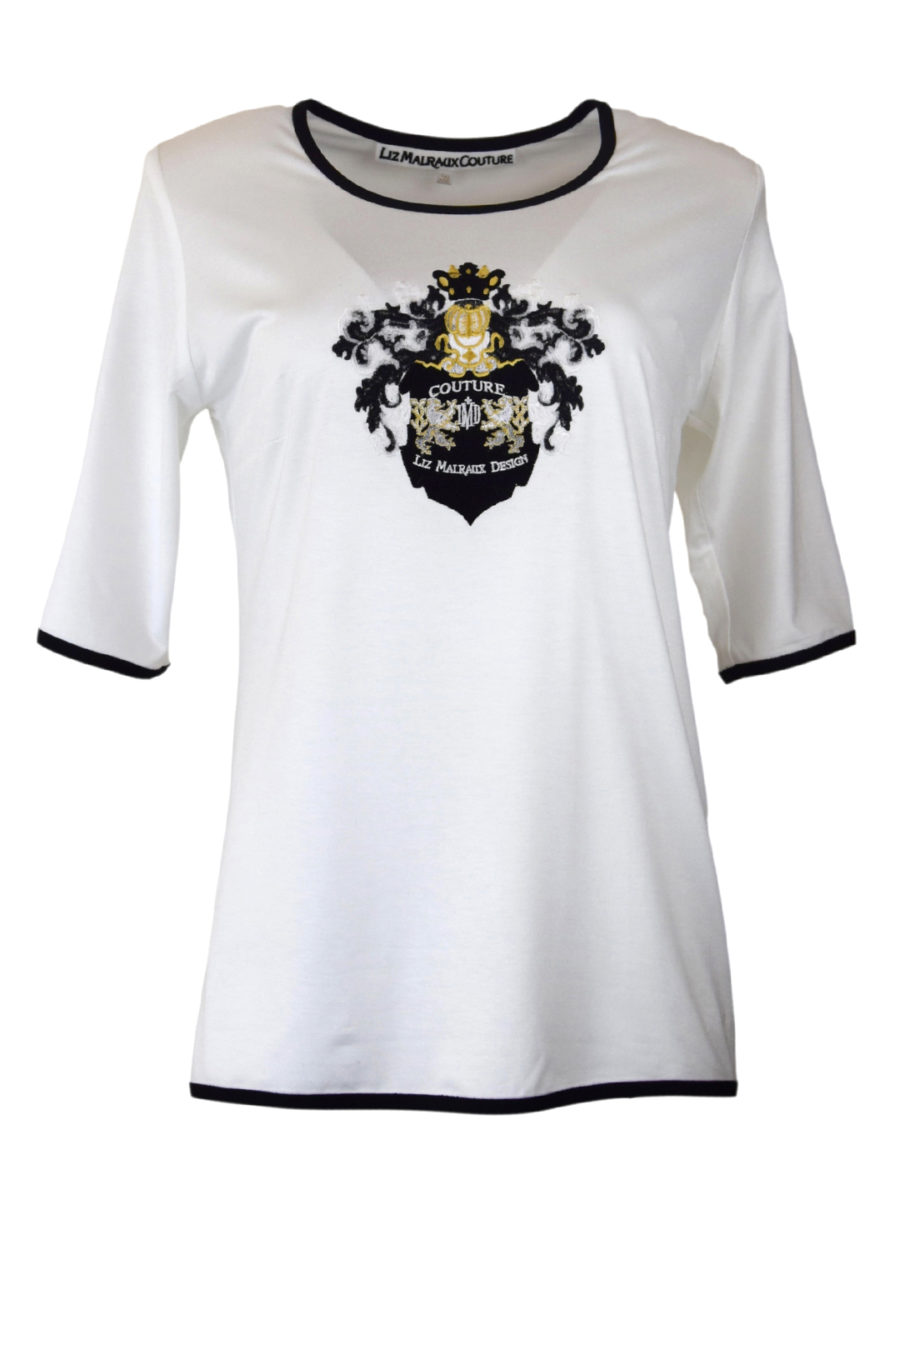 Couture-Shirt, LMD-Heraldik, Kurzarm